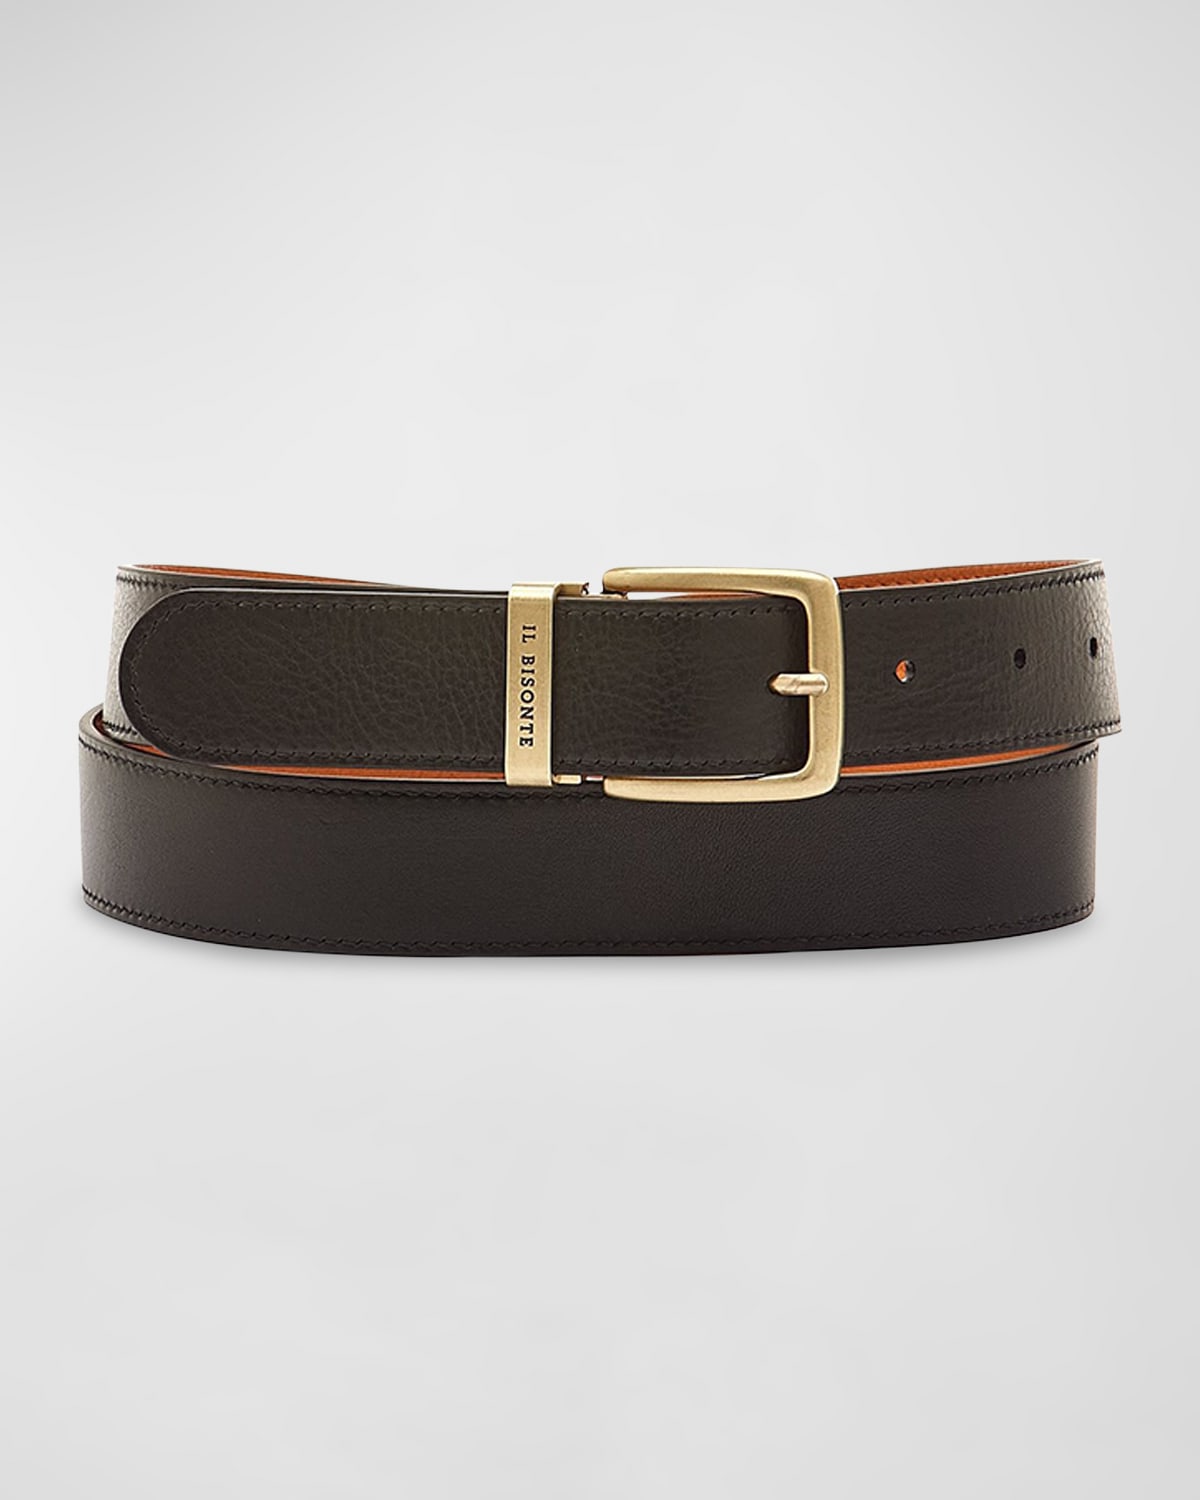 Shop Il Bisonte Esperia Reversible Leather Belt In Caramel / Black